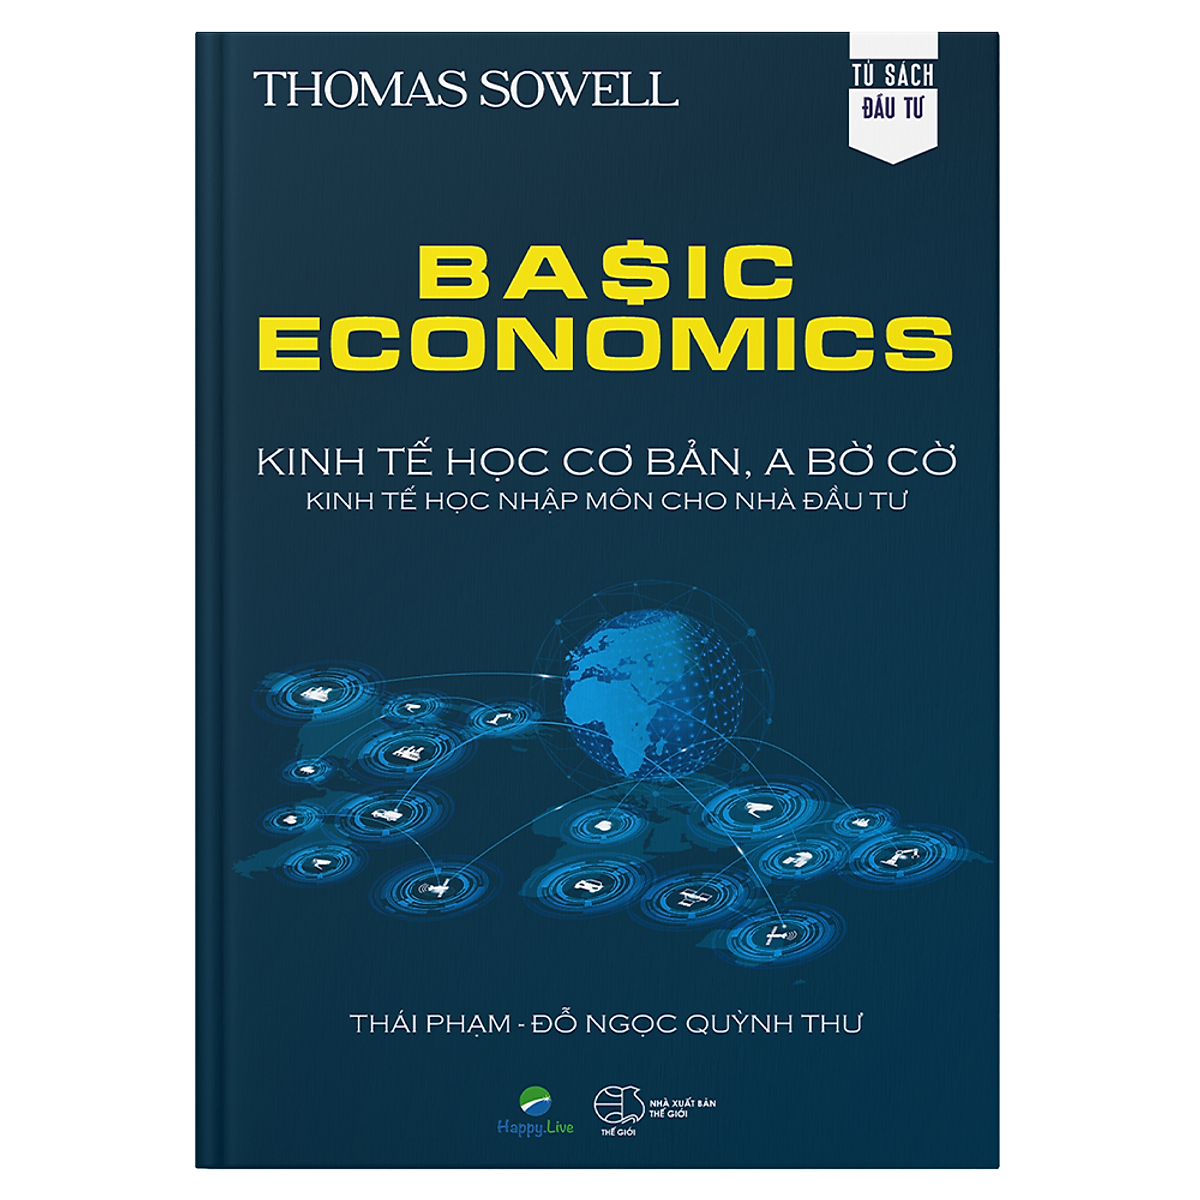 Basic Economics: Kinh tế học cơ bản, a bờ cờ, kinh tế học nhập môn cho nhà đầu tư ebook PDF-EPUB-AWZ3-PRC-MOBI